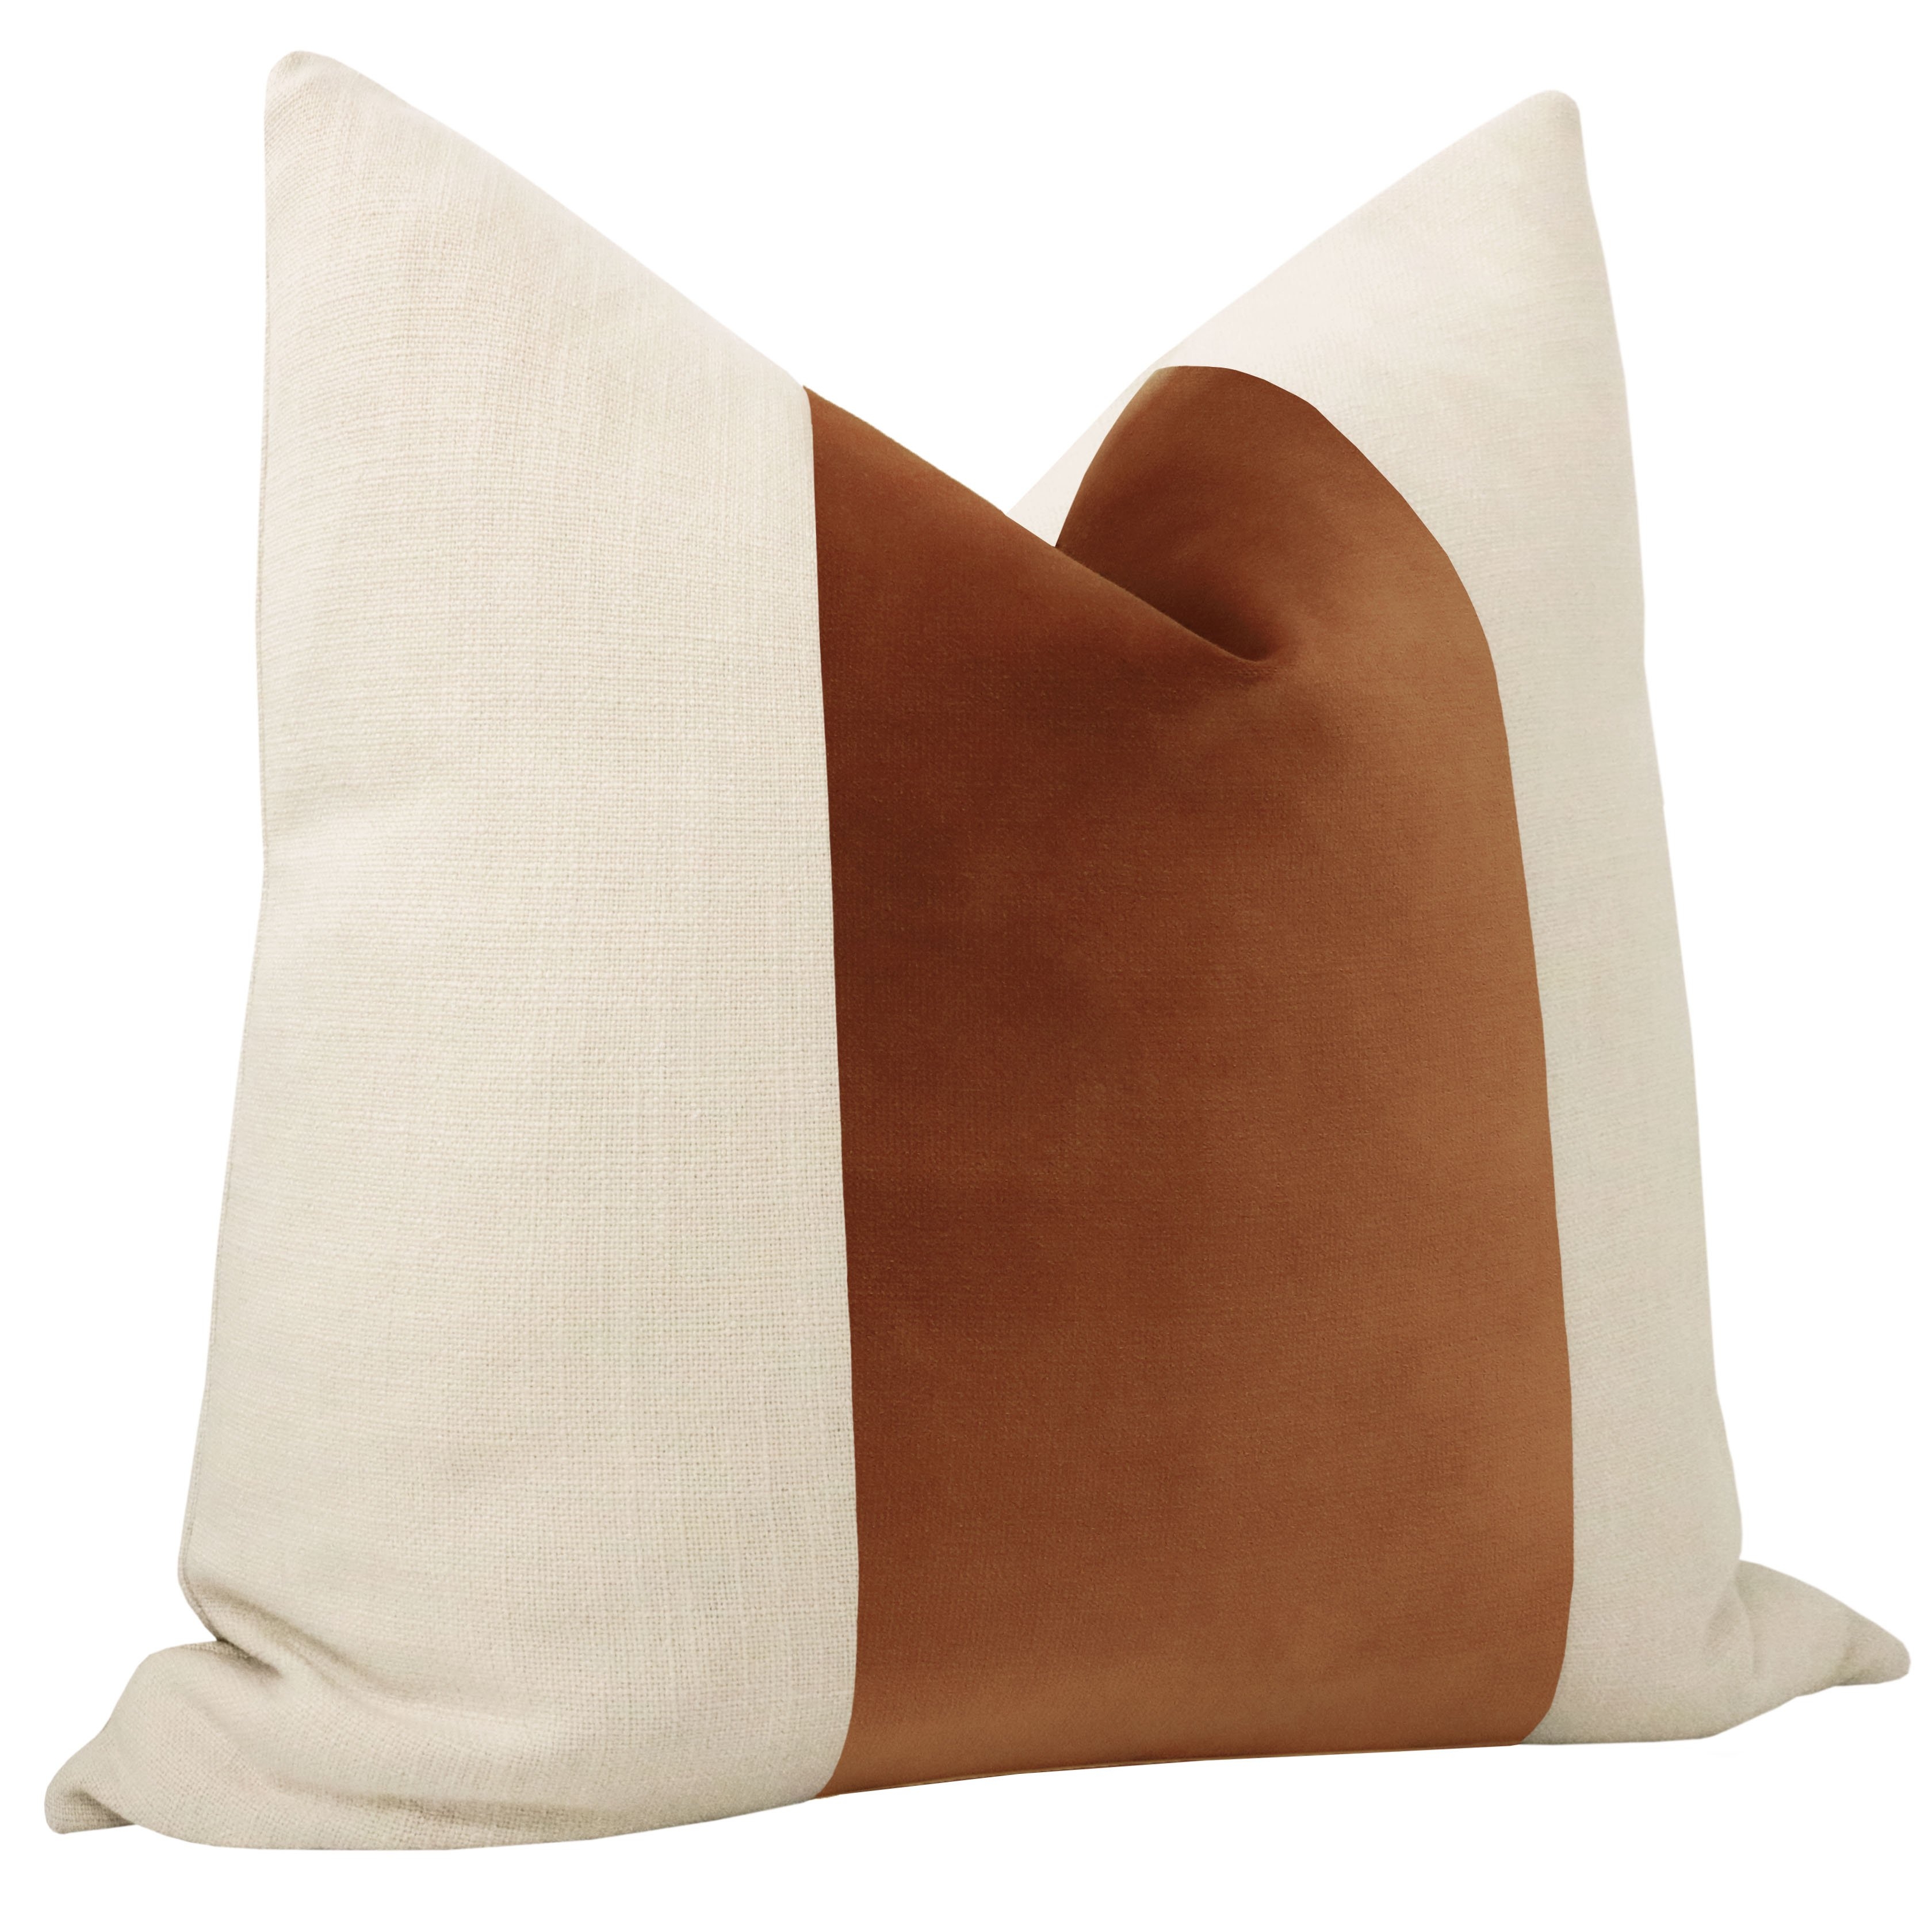 Panel Sonoma Velvet Pillow Cover, Rust, 18" x 18" - Image 1